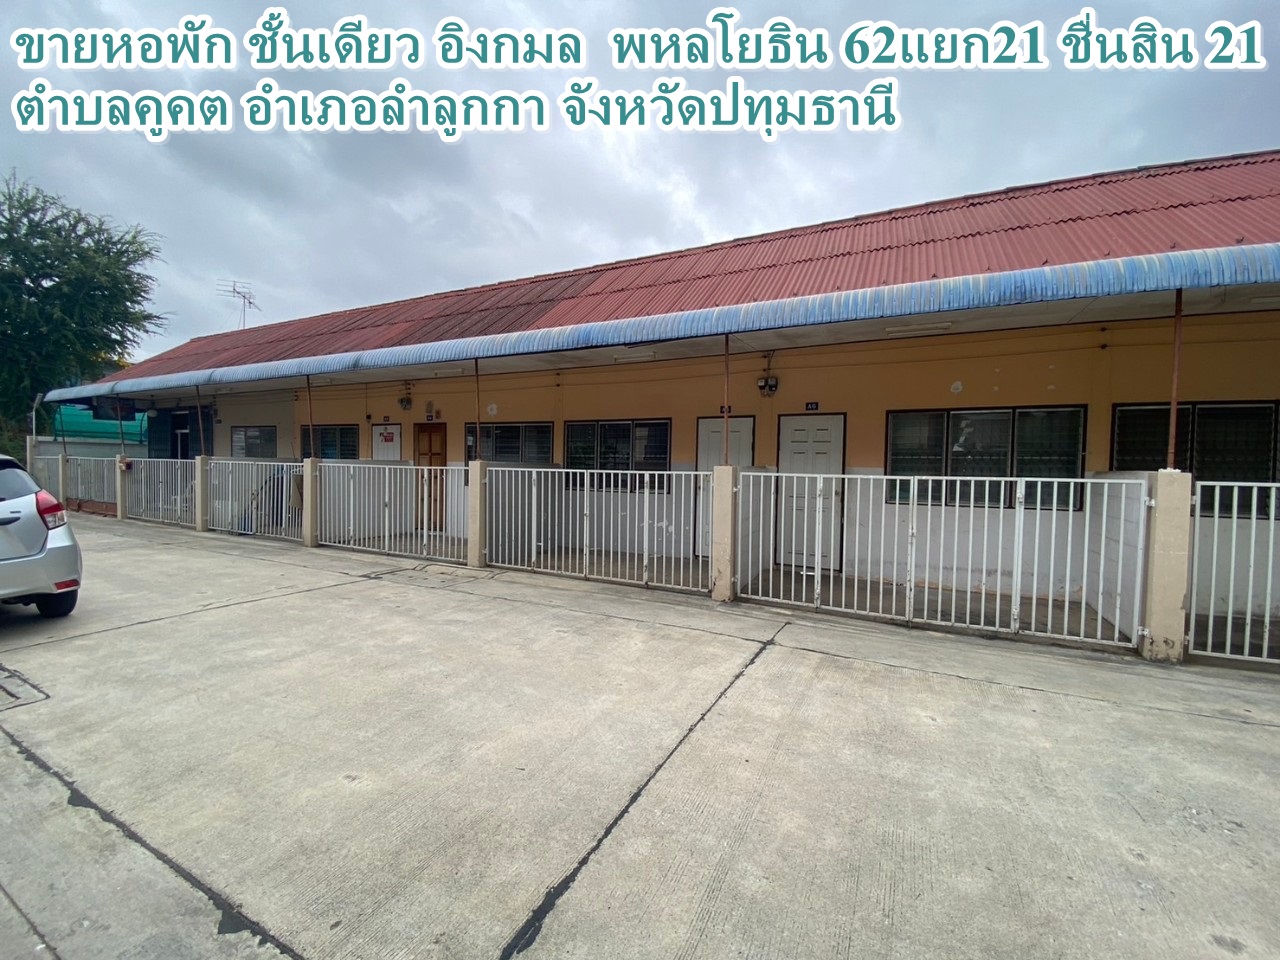 Selling a single storey dormitory, Ingkamon, Khu Khot Subdistrict, Lam Luk Ka District, Pathum Thani Province